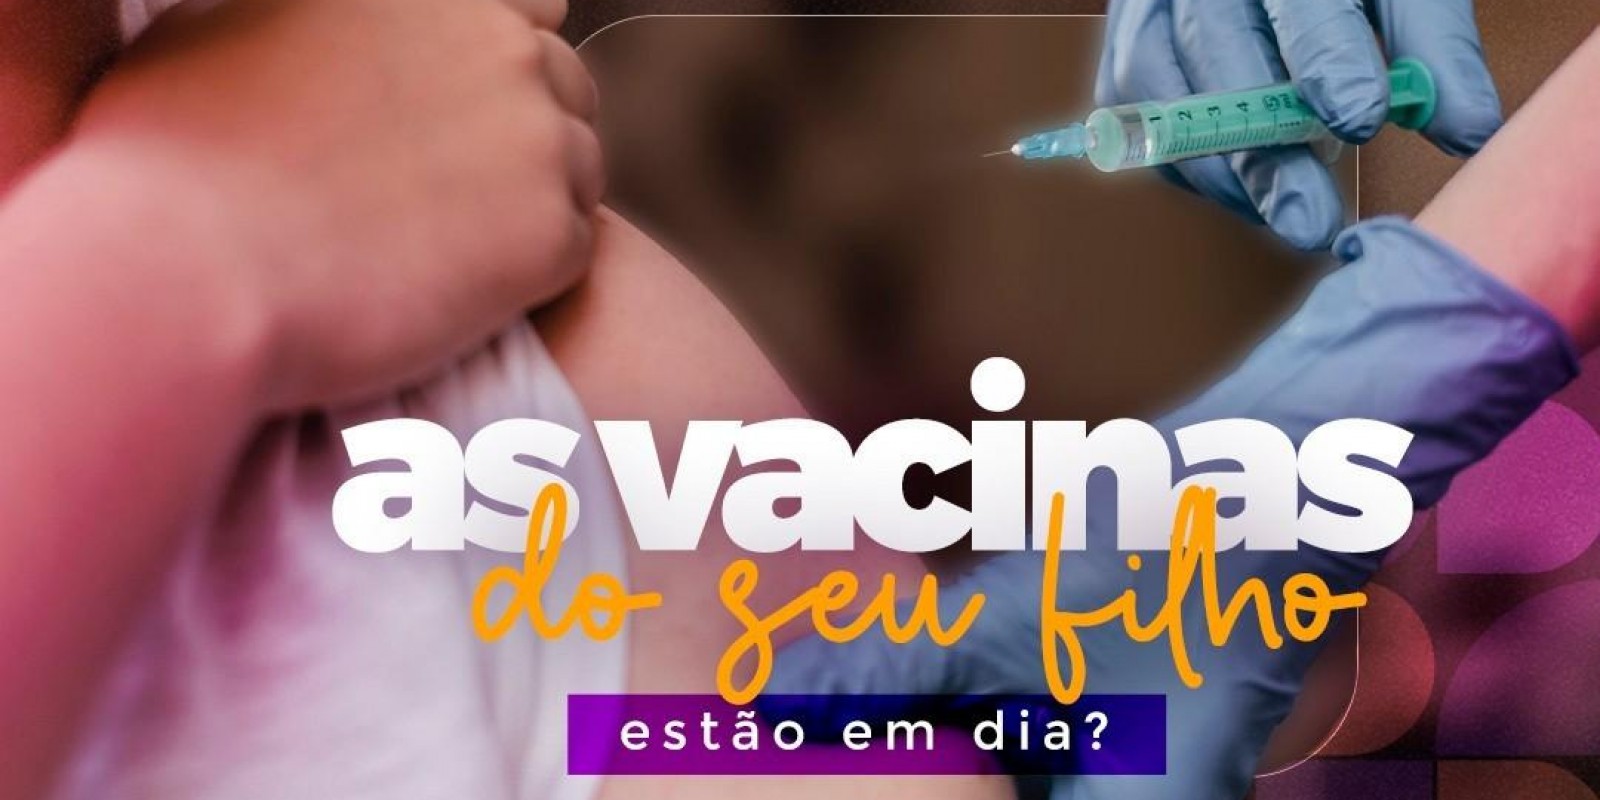 As vacinas do seu filho etão em dia?